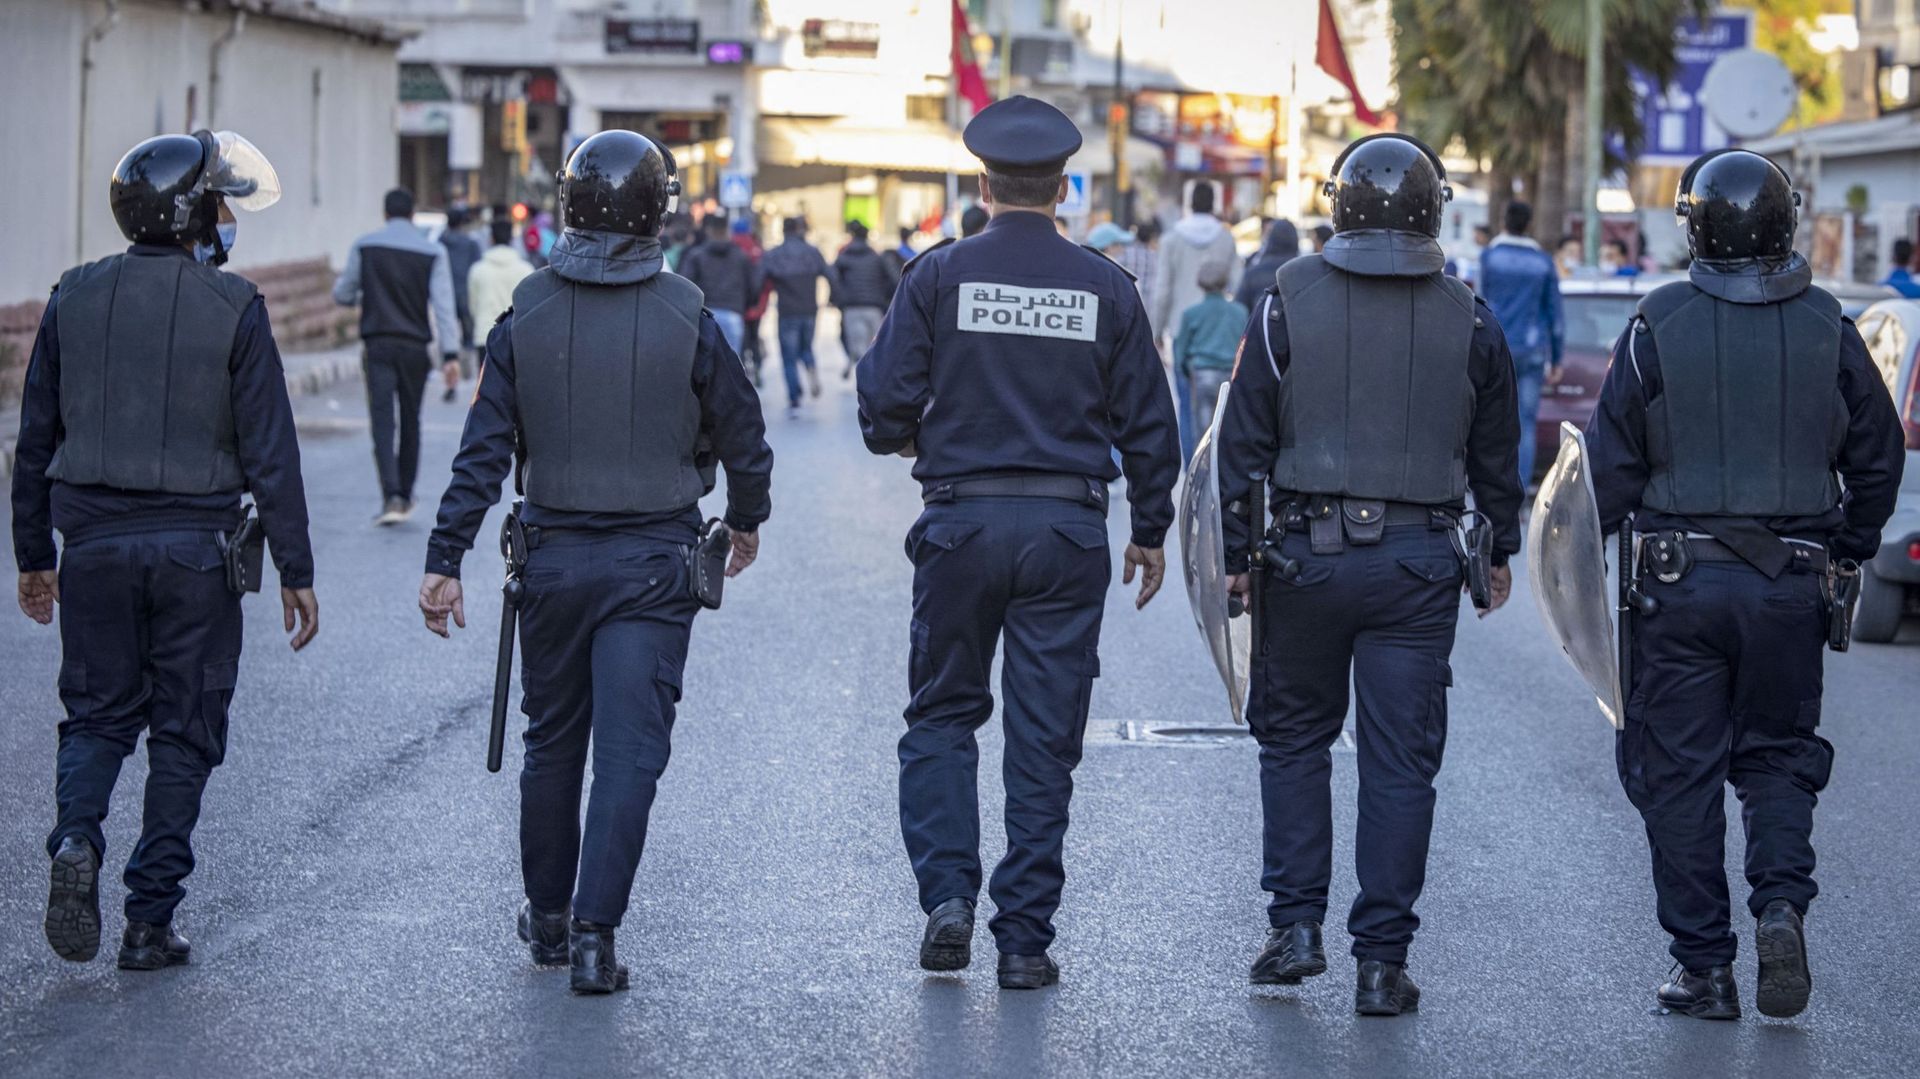 Casablanca : la police fait usage d'armes à feu pour disperser des hooligans violents, une enquête en cours  